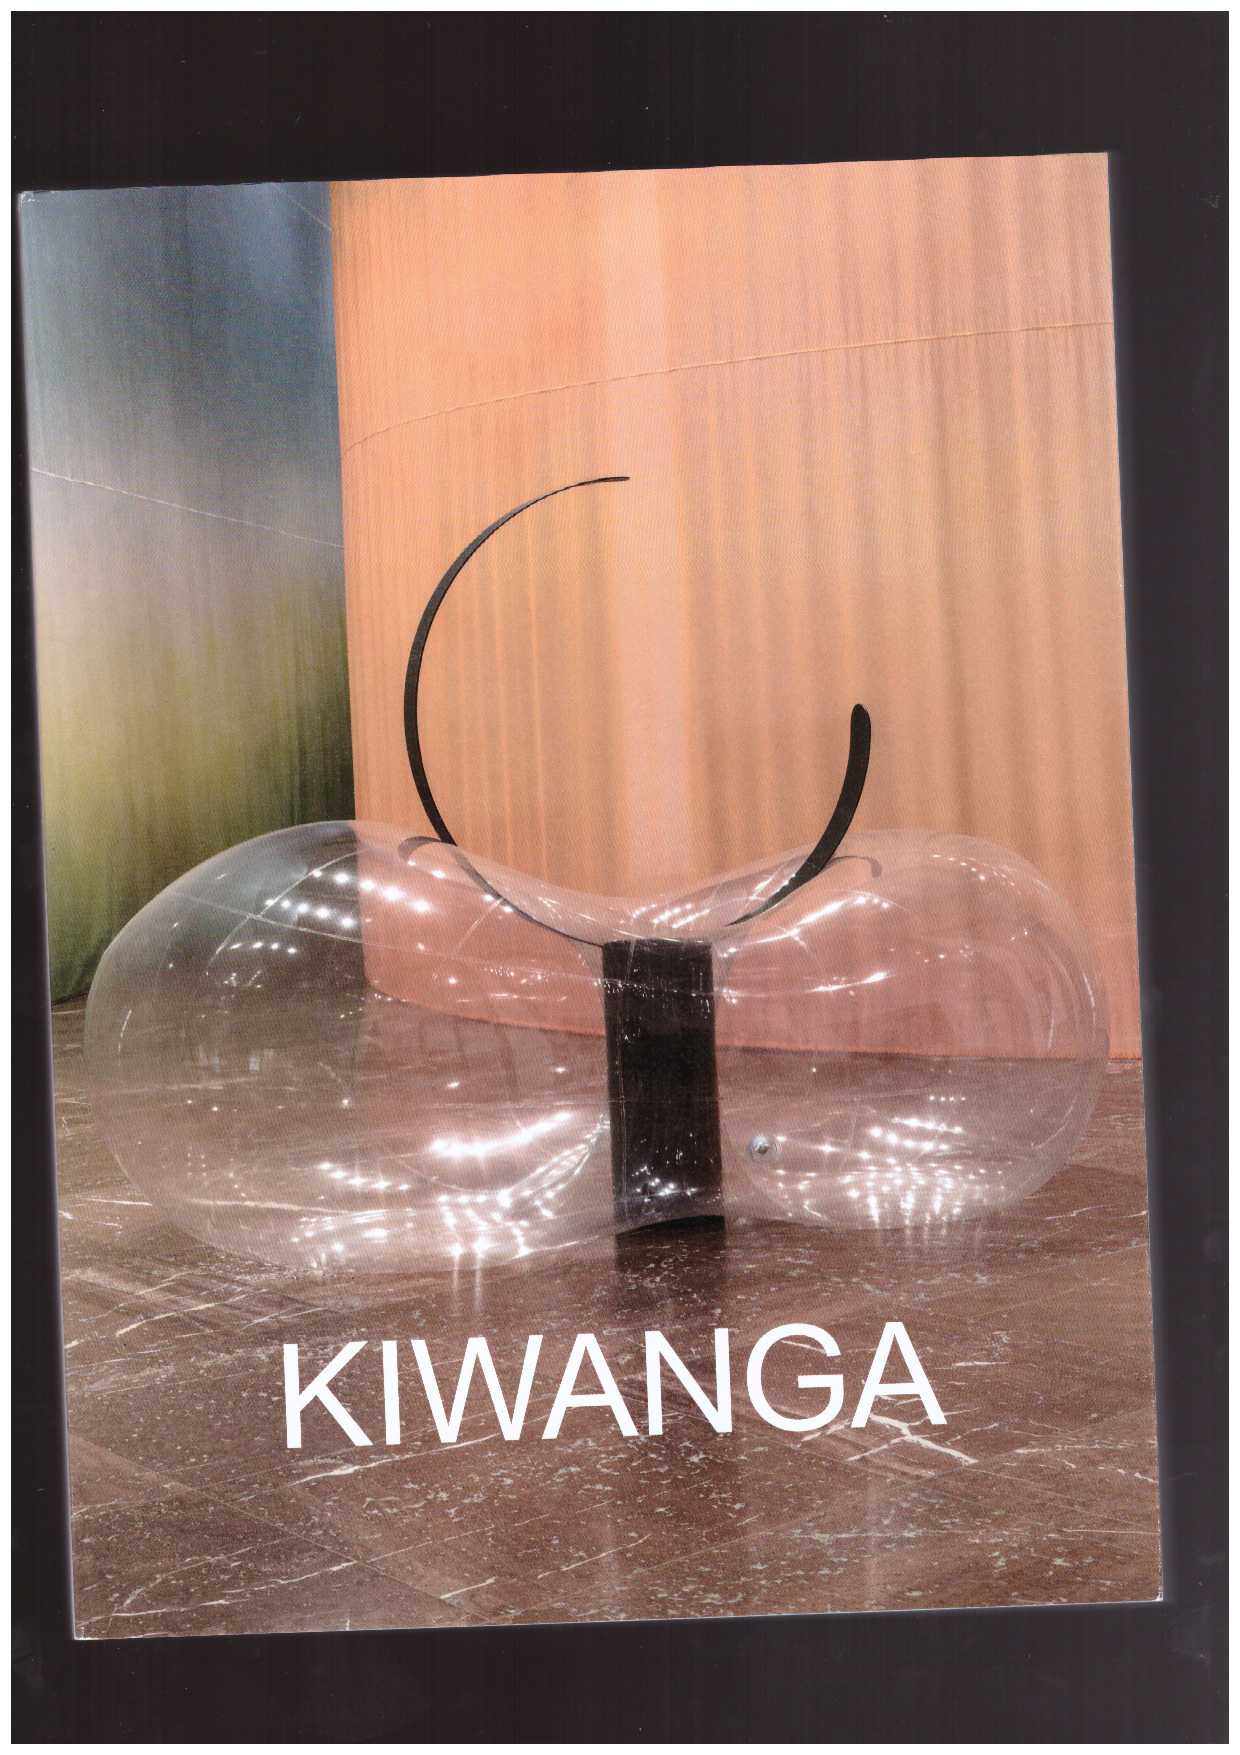 KIWANGA, Kapwani; GIONI, Massimiliano (ed.); WEISBURG, Madeline (ed.) - Kapwani Kiwanga. Off-Grid